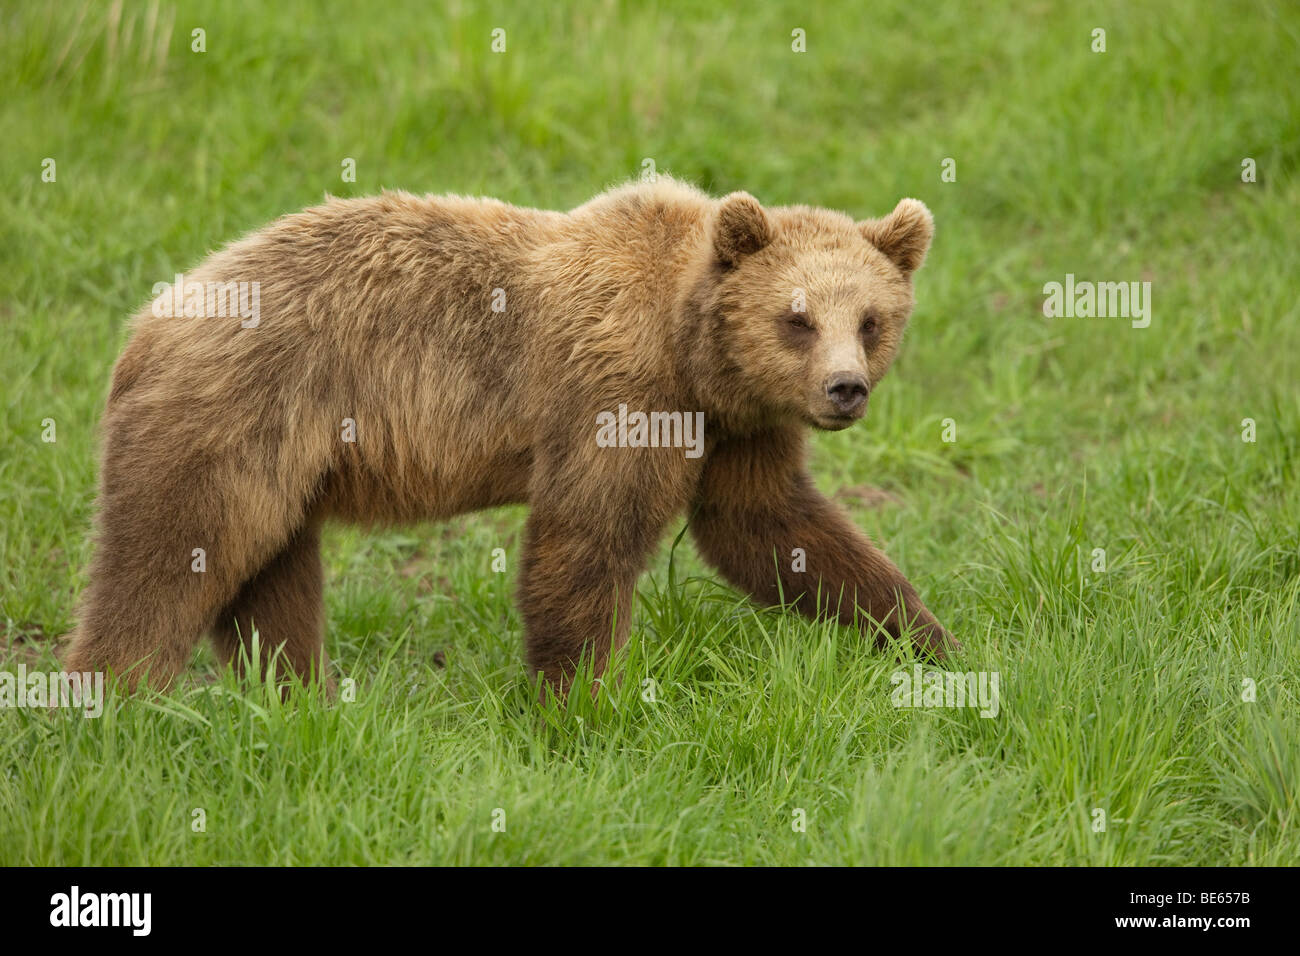 Unione l'orso bruno (Ursus arctos) camminando su un prato. Foto Stock